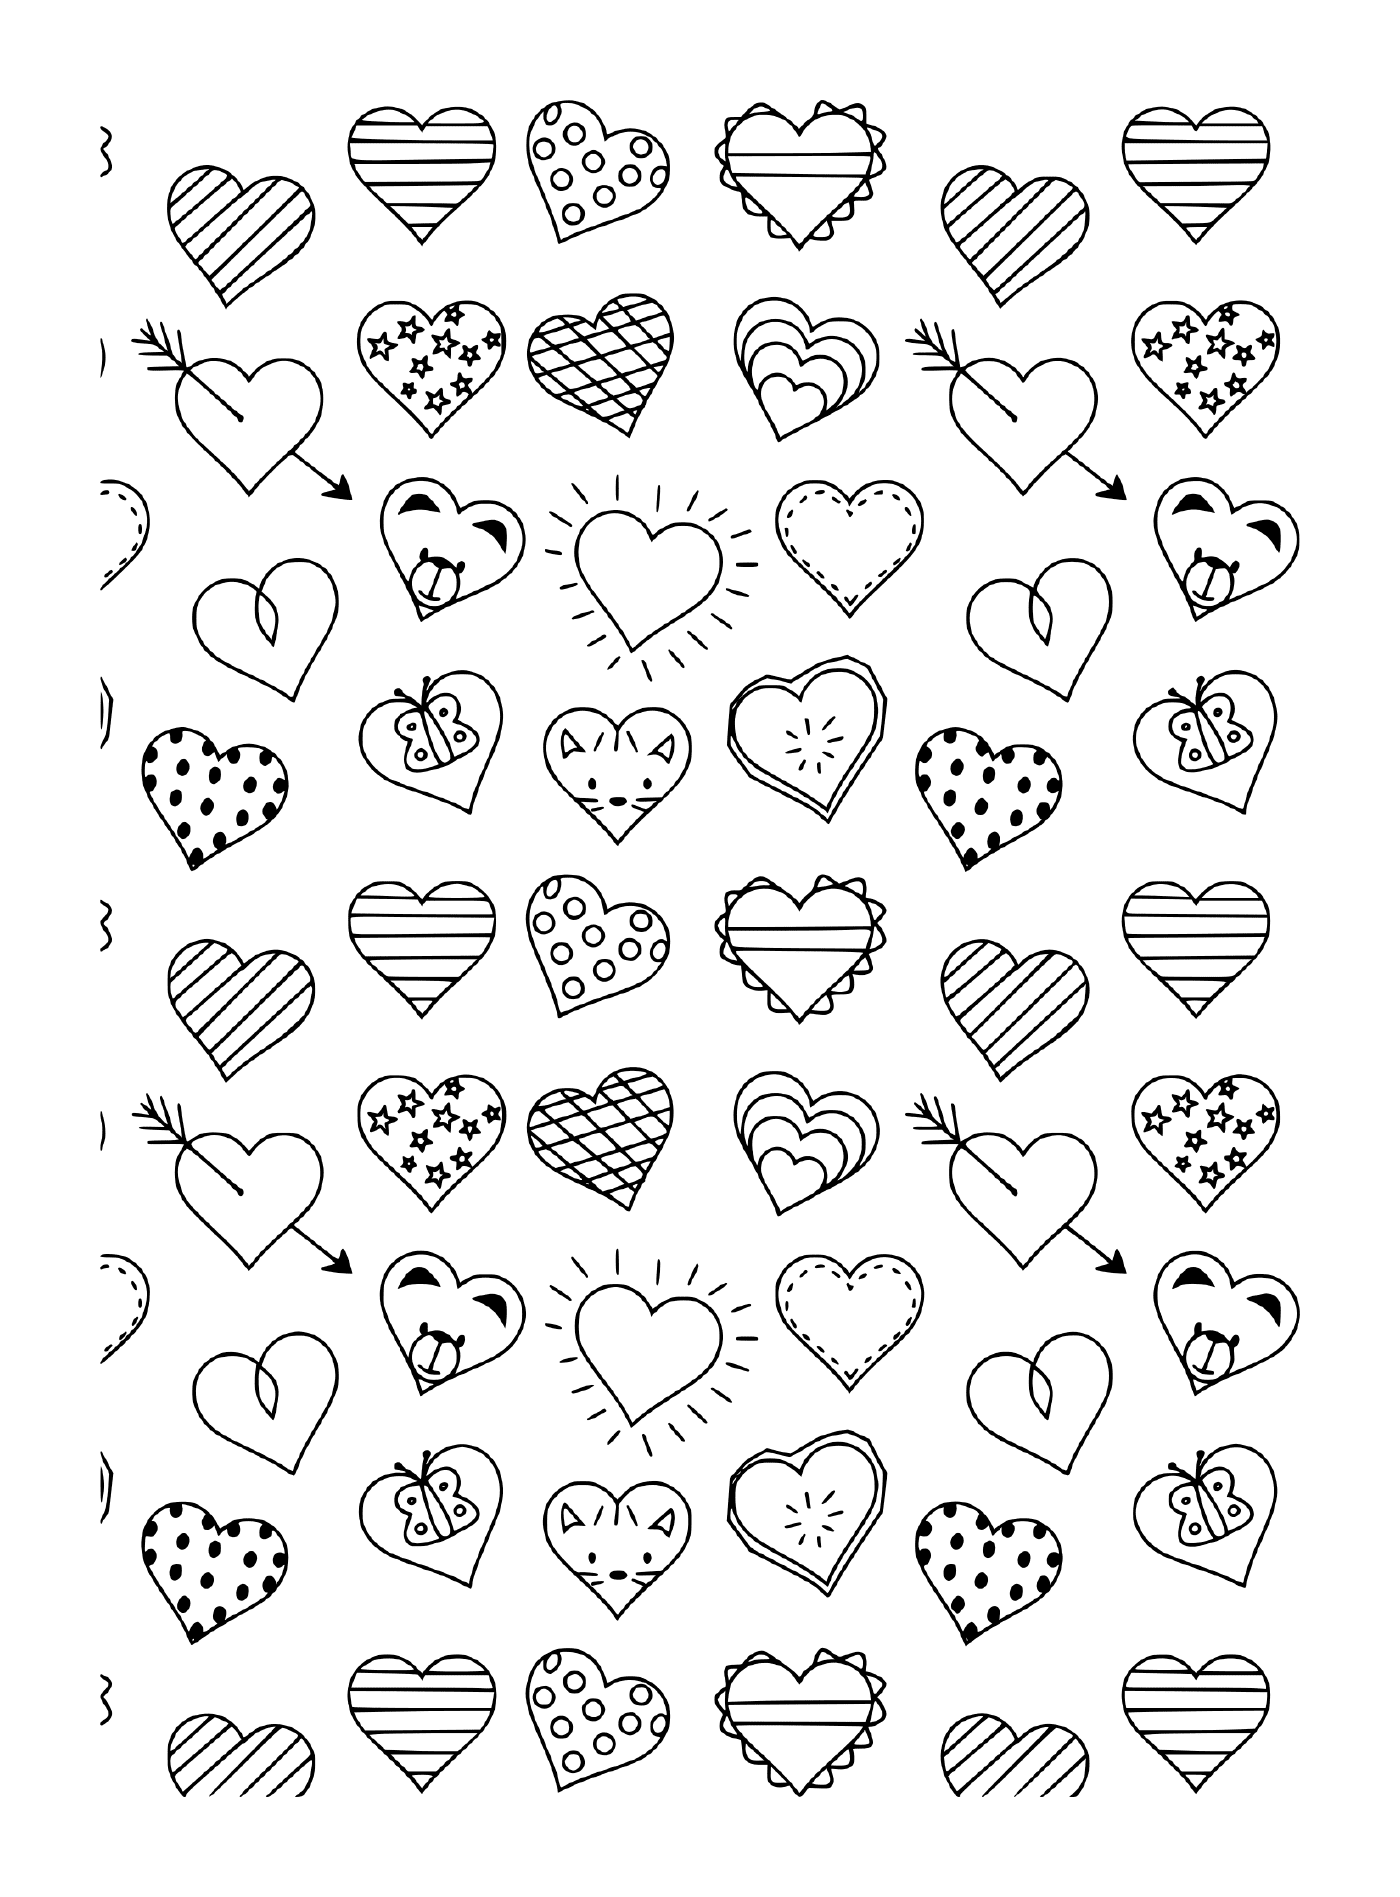  Un patrón blanco y negro de diferentes corazones y flechas 